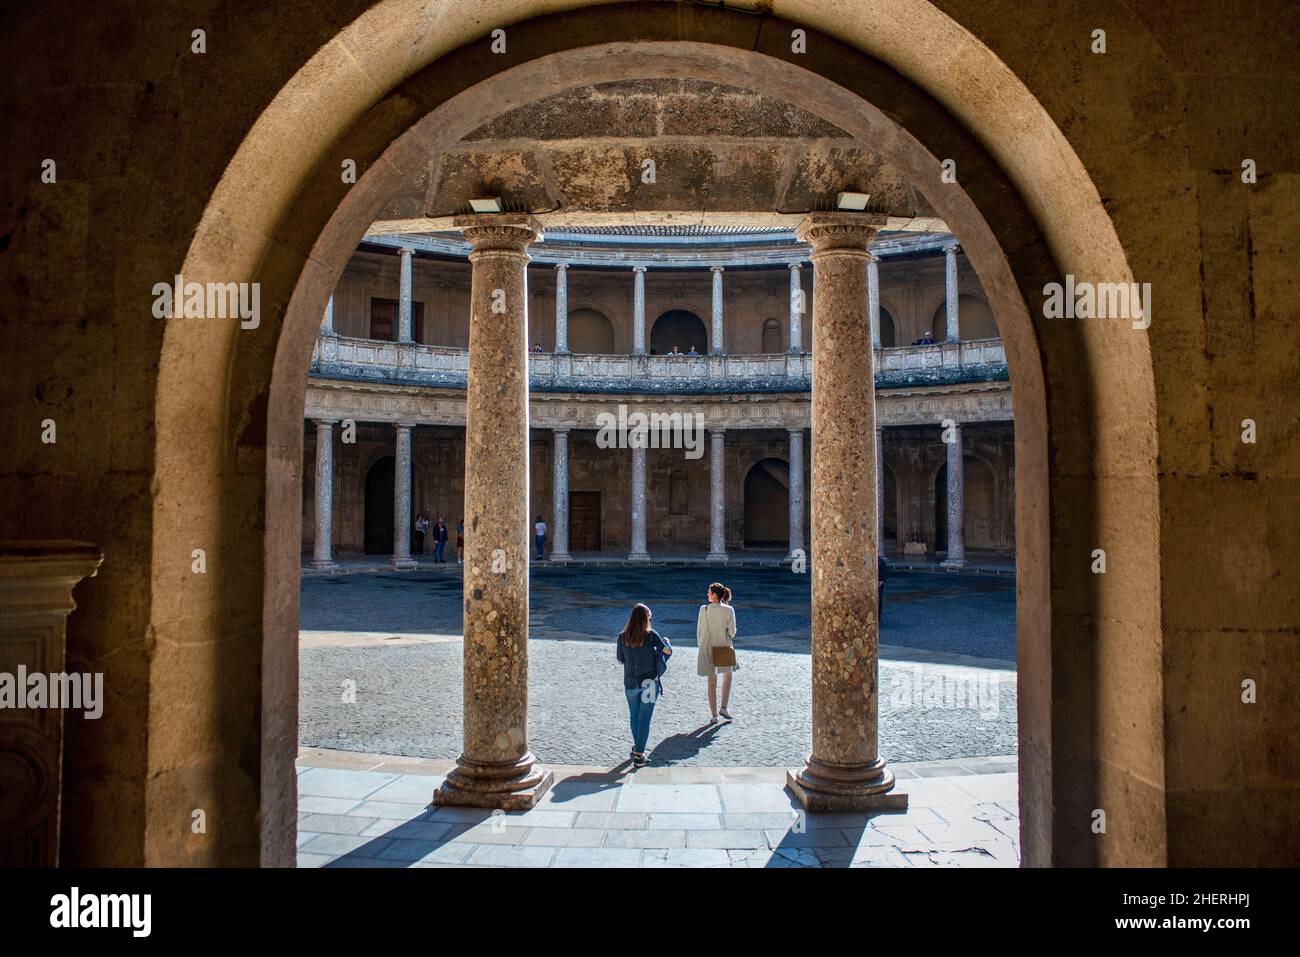 Geschnitzte Säulen in einem inneren Palast von Carlos V., dem Alhambra Palast Granada, Spanien. Das Gebäude verfügt über zwei Ebenen: Die untere Ebene der Terrasse hat 3 Stockfoto